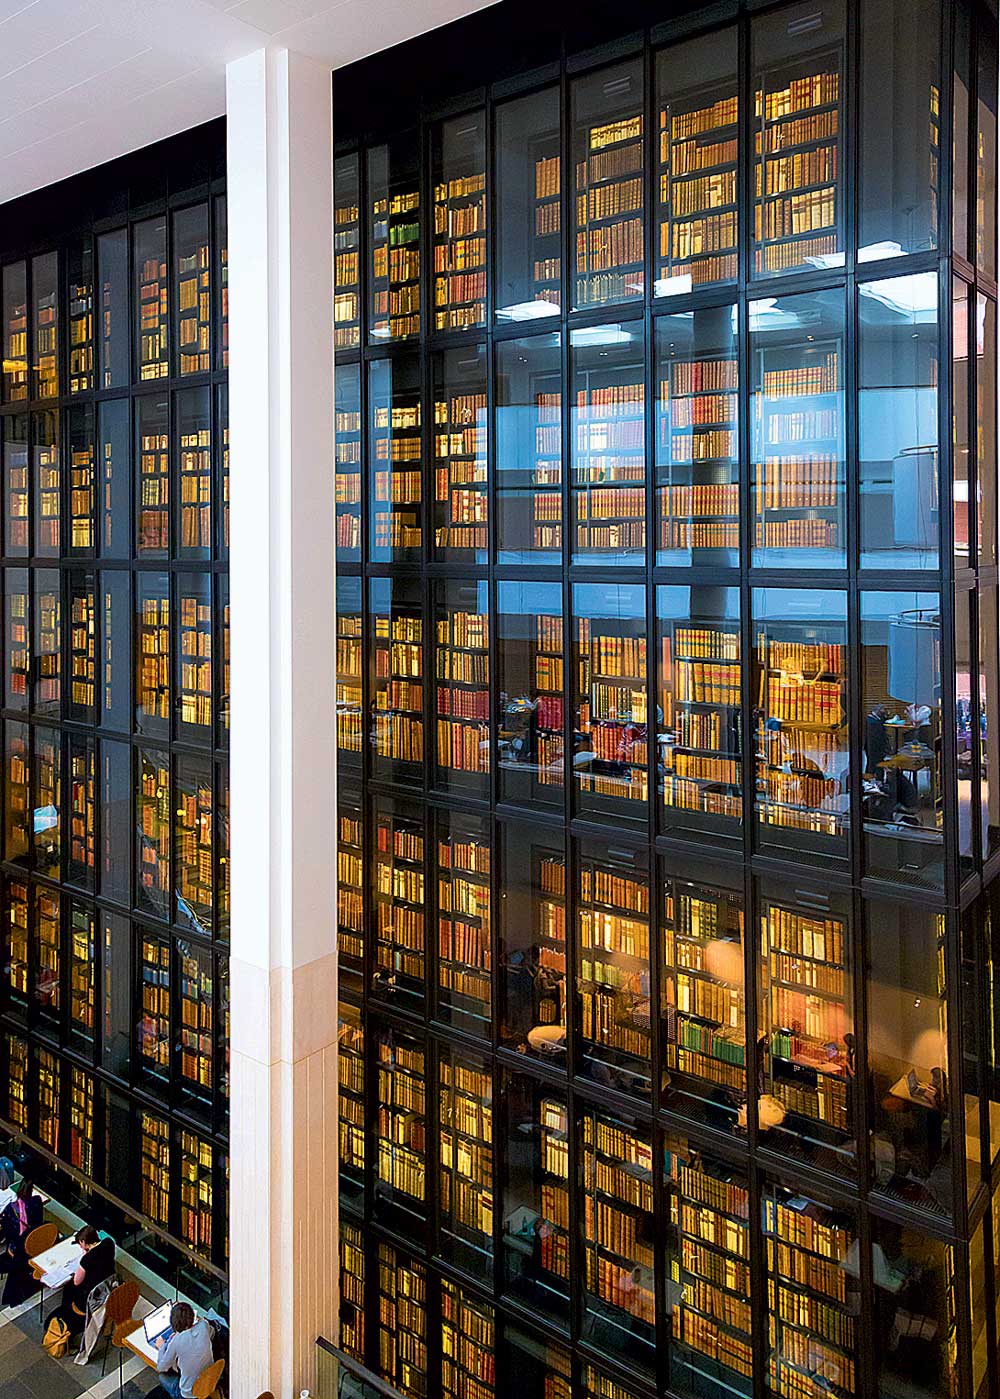 Британская библиотека в Лондоне. Самая большая библиотека в мире. Книжный мир. Великая библиотека.